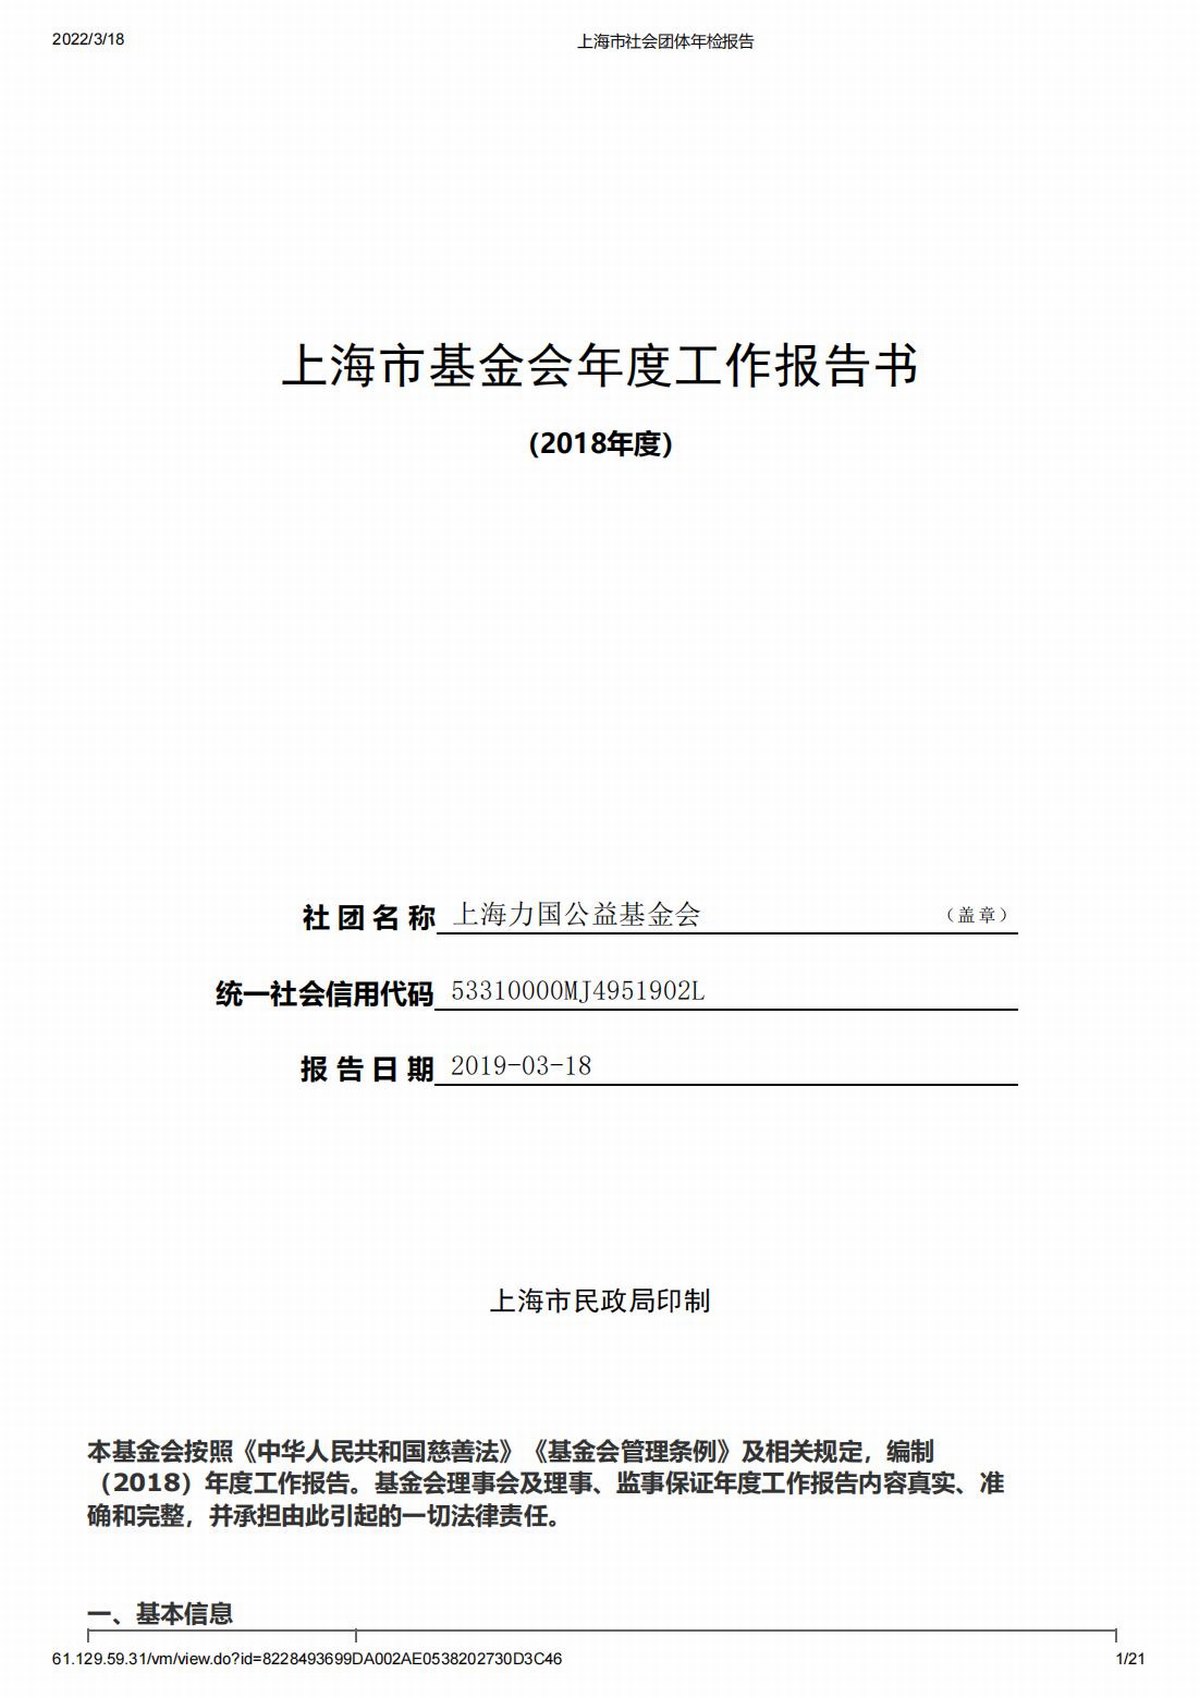 2018上海力国公益基金会年检报告